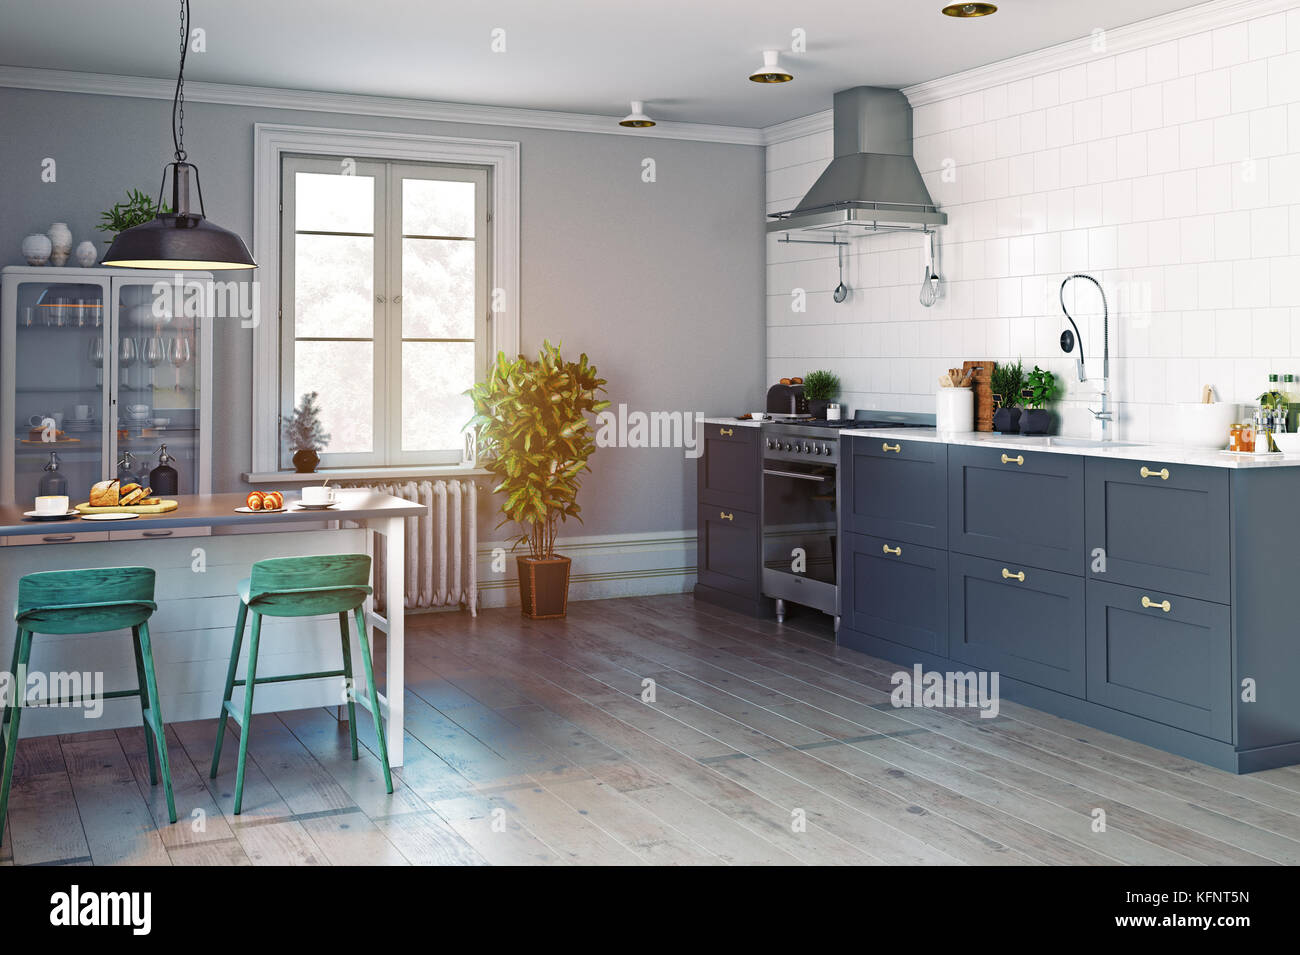 White Kitchen Design. Scandinavian, Clean, Simple Kitchen Interior ...